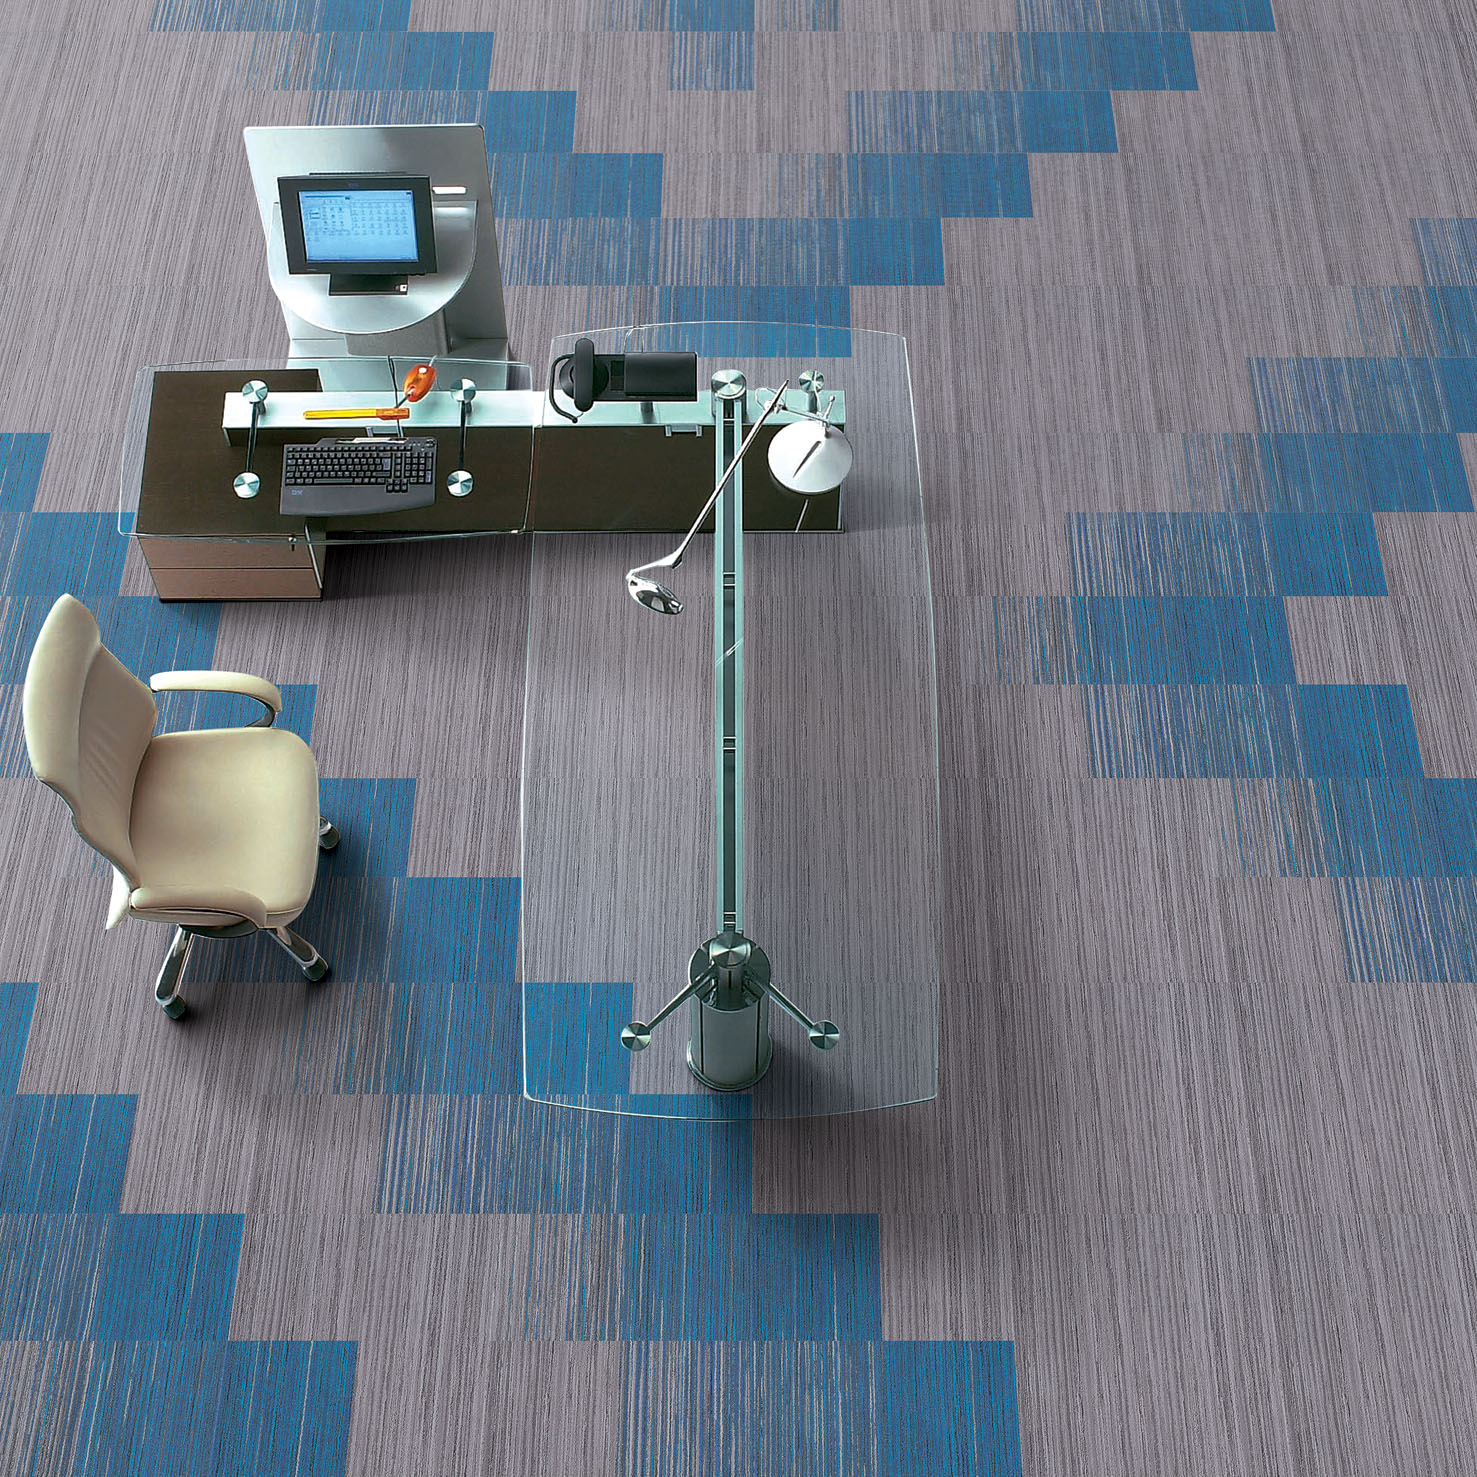 High Quality Voxfloor Carpet Tiles Interface CTTN Tile Carpet Wholesale Auditorium Public Office Blue Carpet Tile